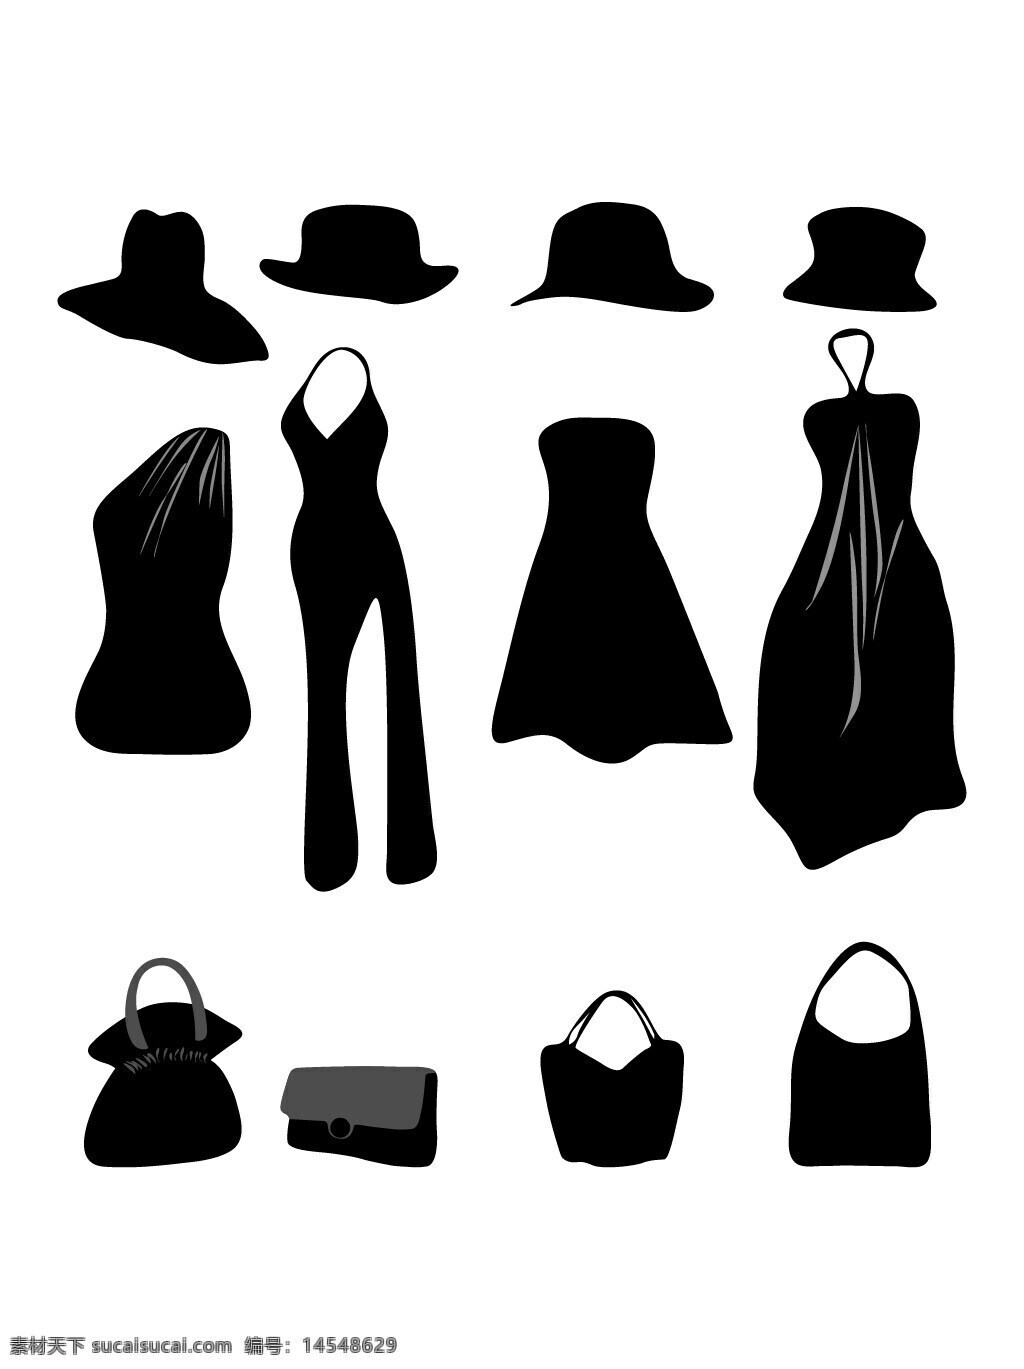 衣服剪影 矢量衣服 裙子 连衣裙 女装 帽子 包包 手包 挎包 皮包 女性 服饰 矢量素材